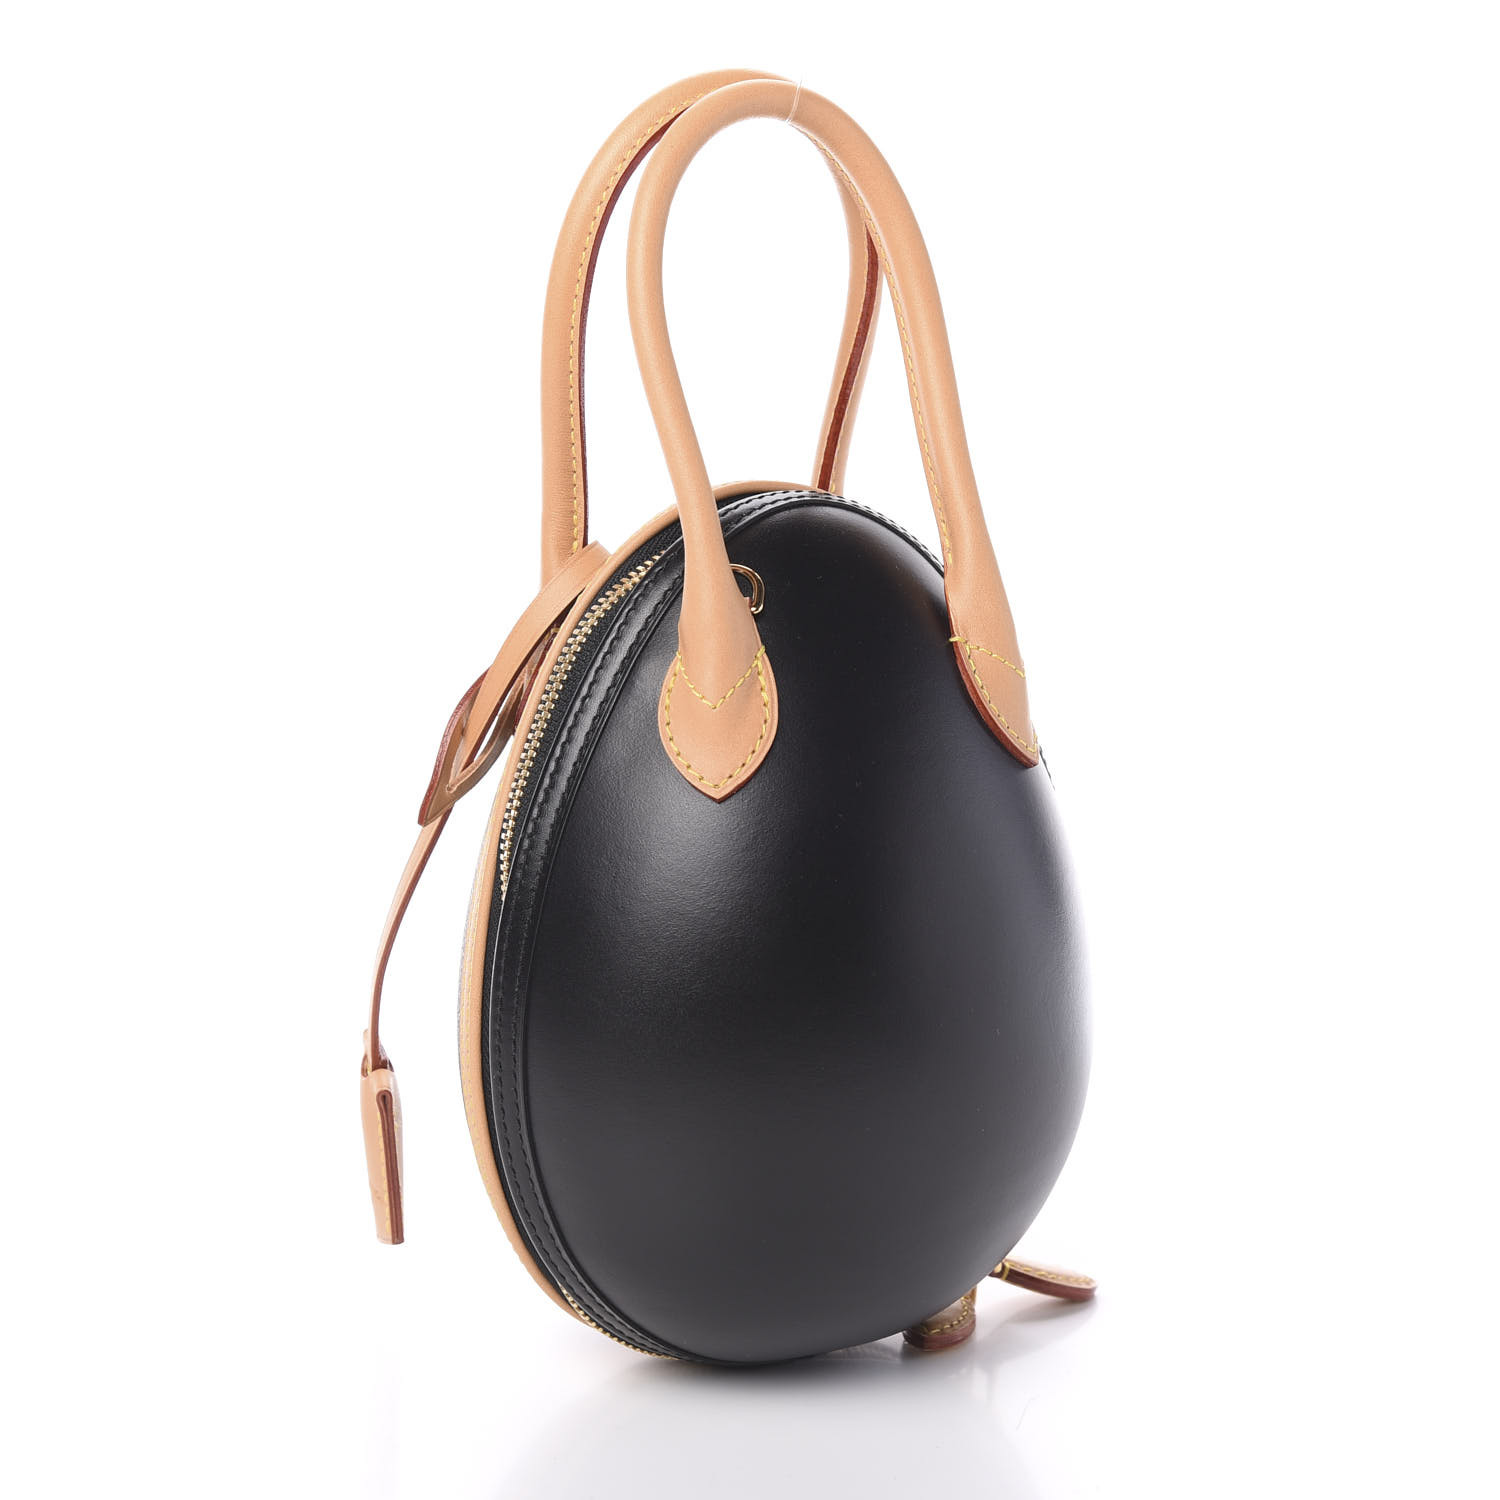 Louis Vuitton Egg Bag